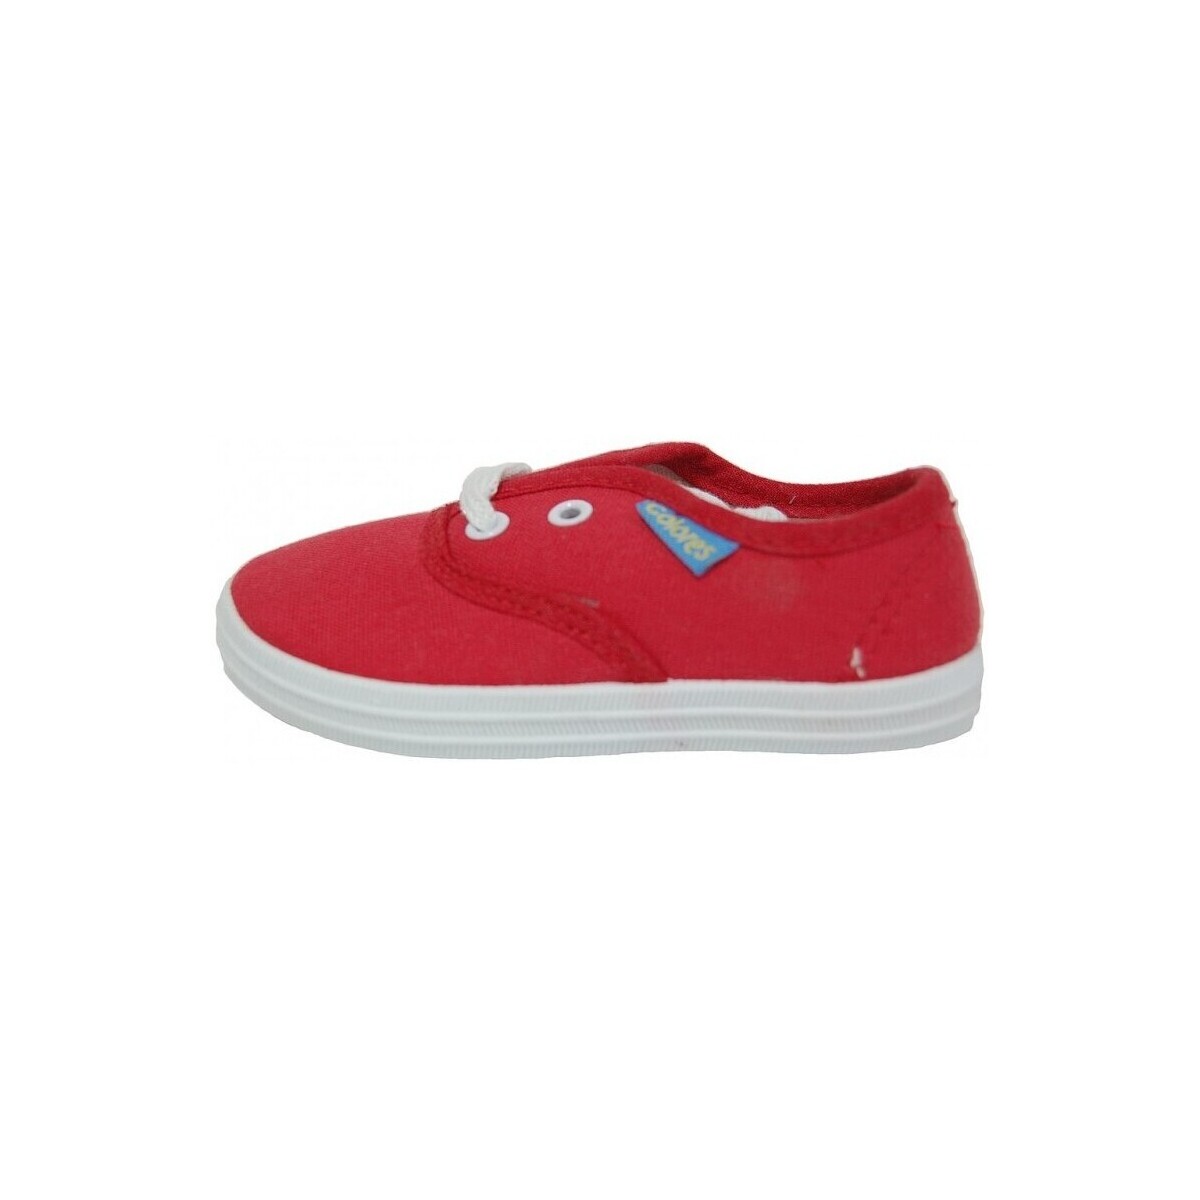 Sko Børn Sneakers Colores 10622-18 Rød